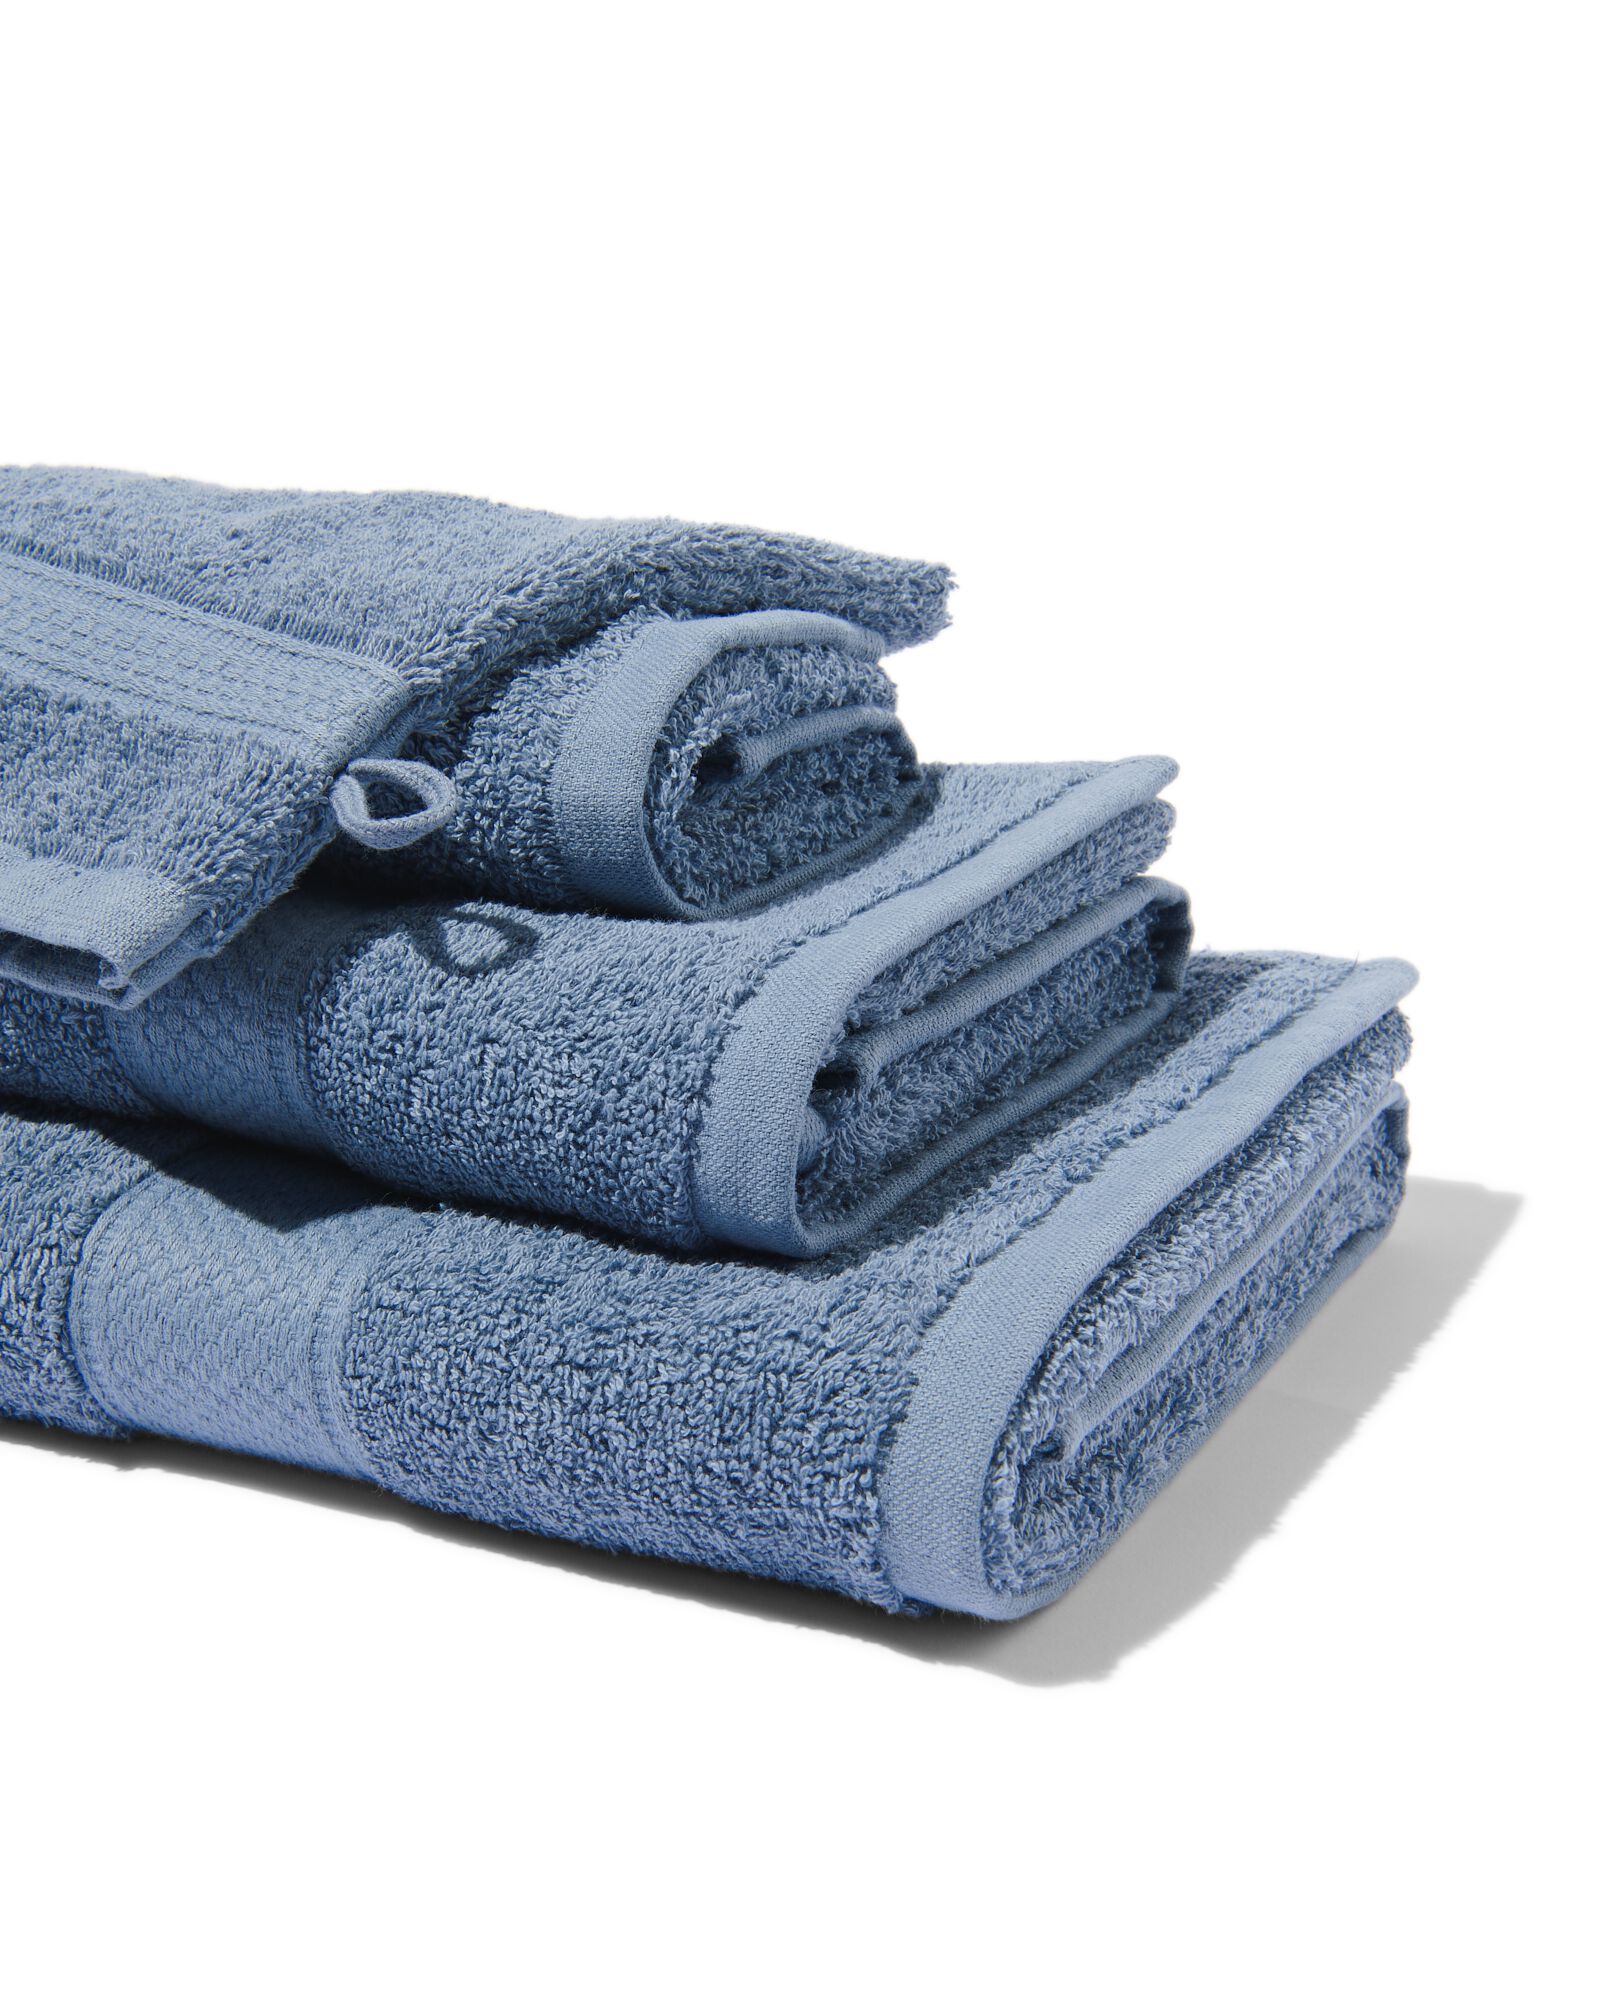 serviette de bain 70x140 qualité épaisse gris-bleu - HEMA